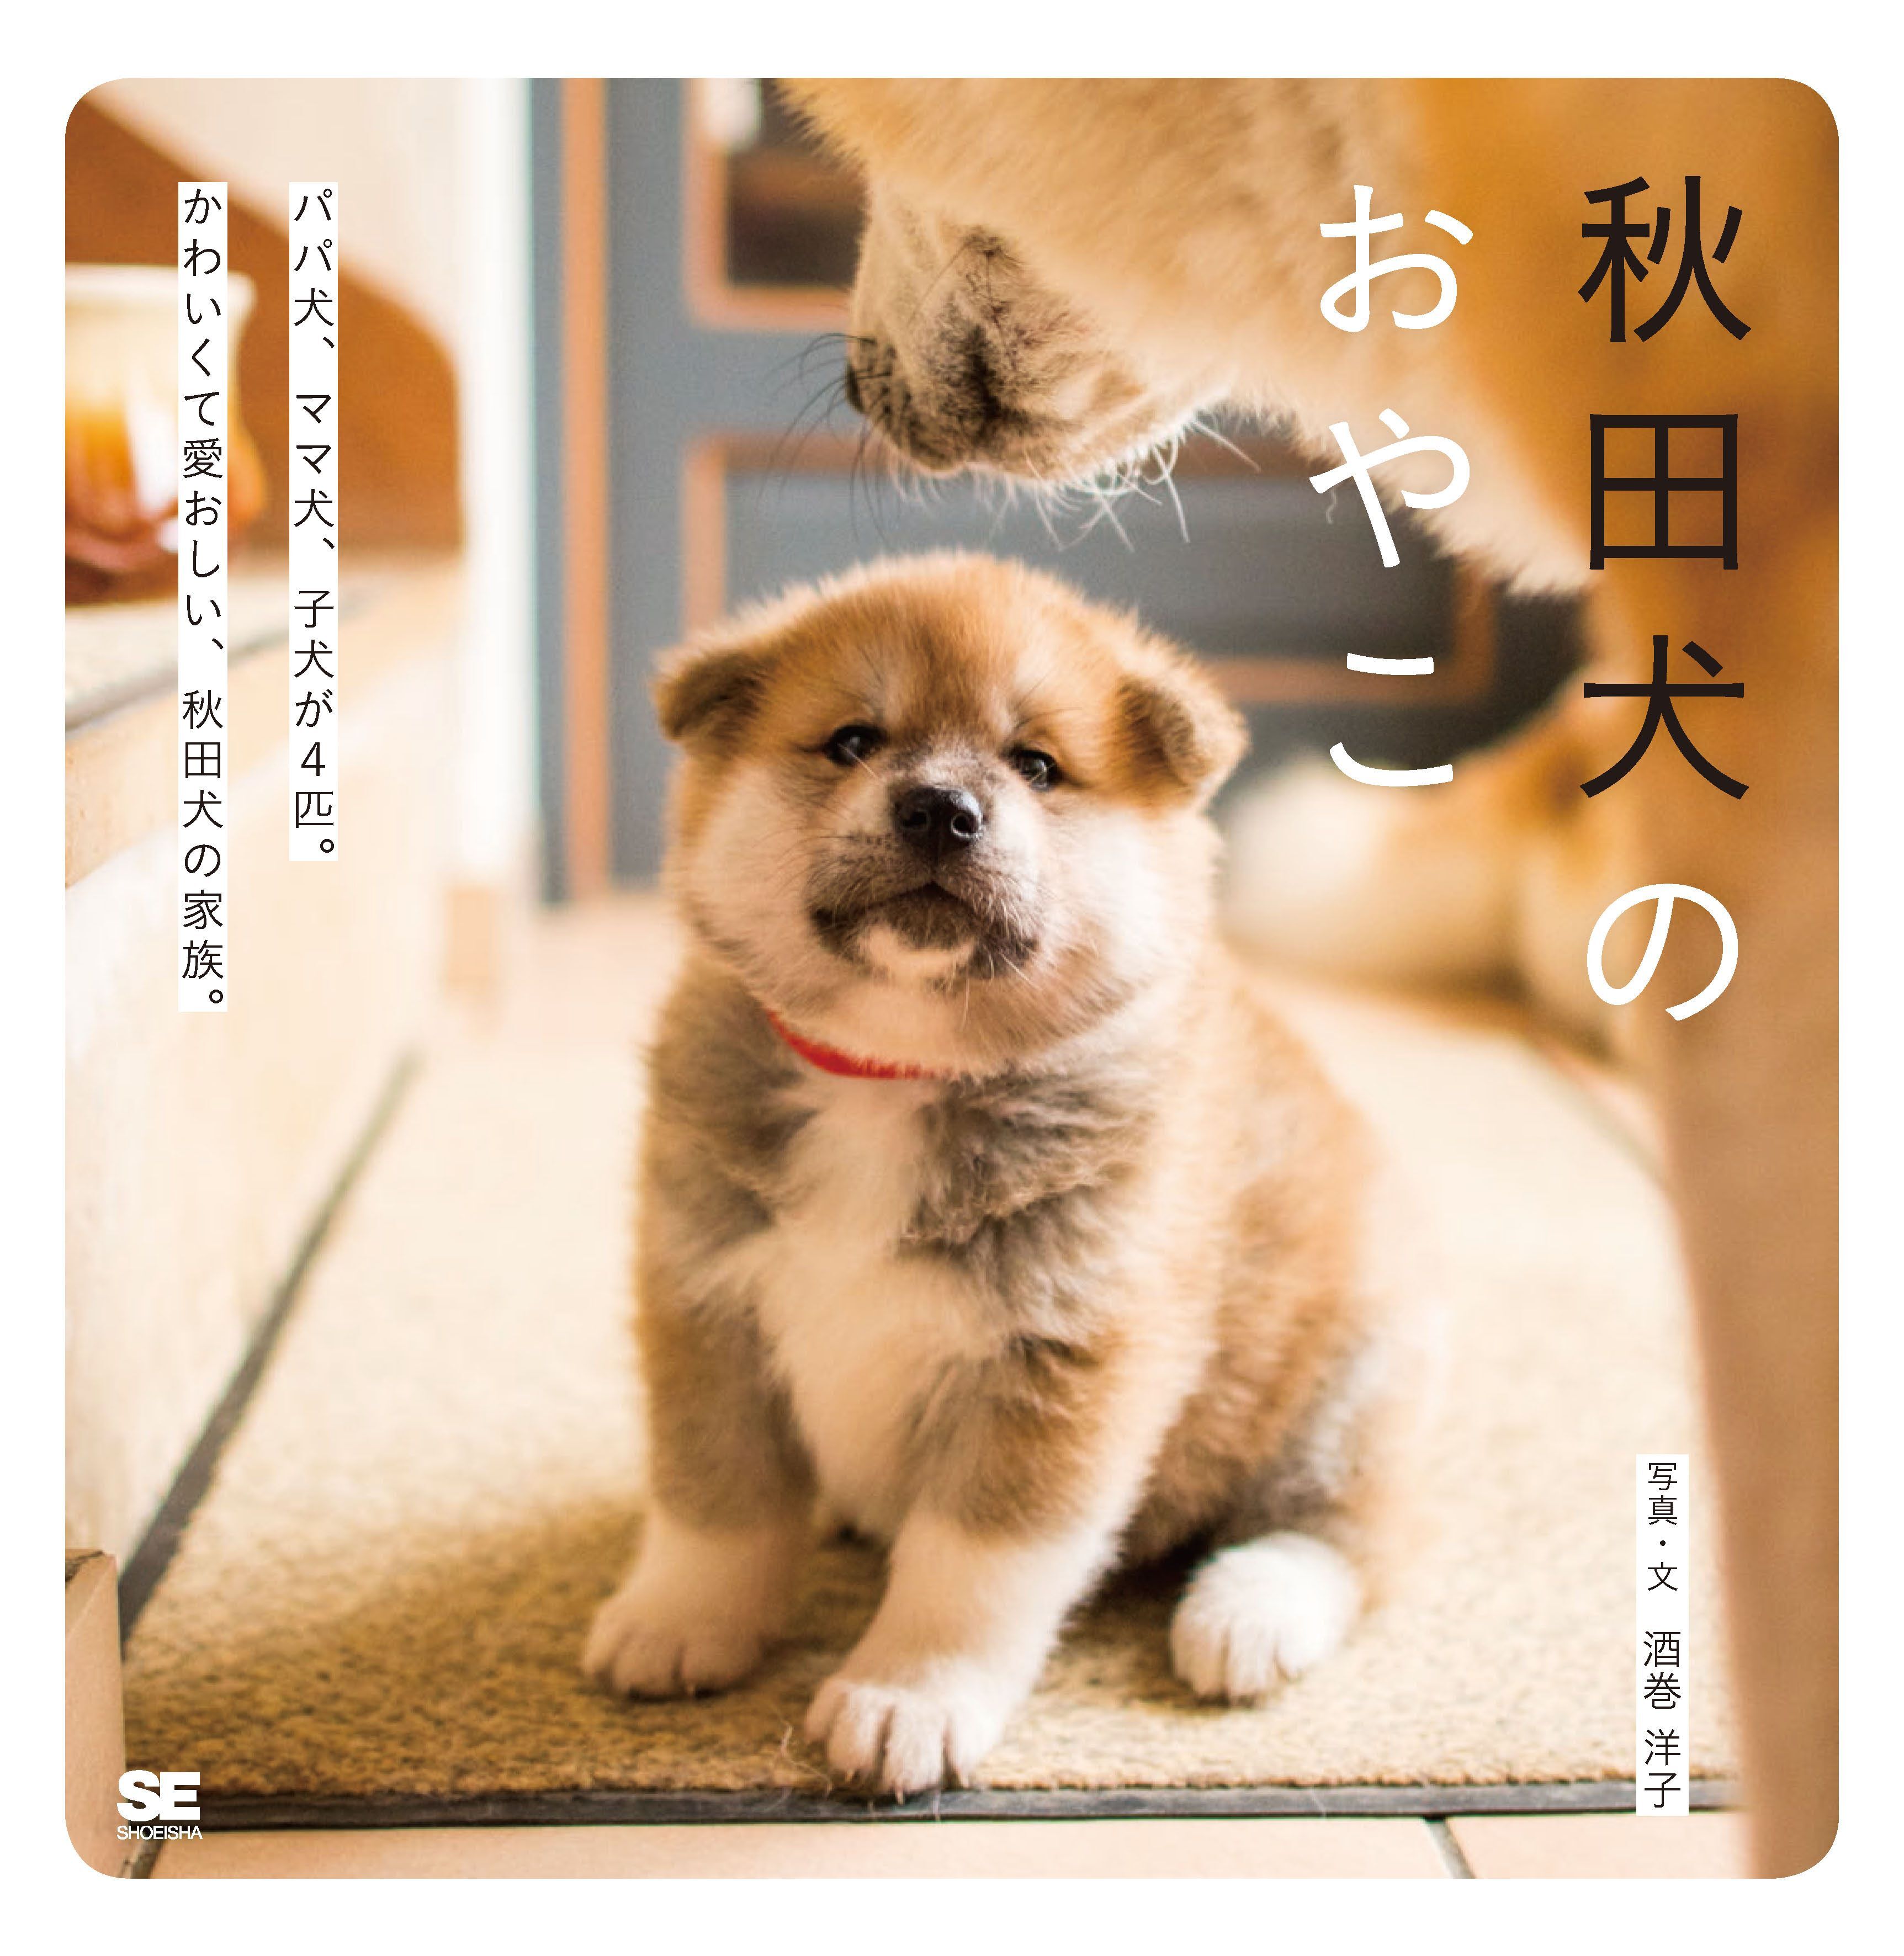 フランスで生まれた かわいい秋田犬の赤ちゃんの写真集 秋田犬のおやこ 株式会社翔泳社のプレスリリース